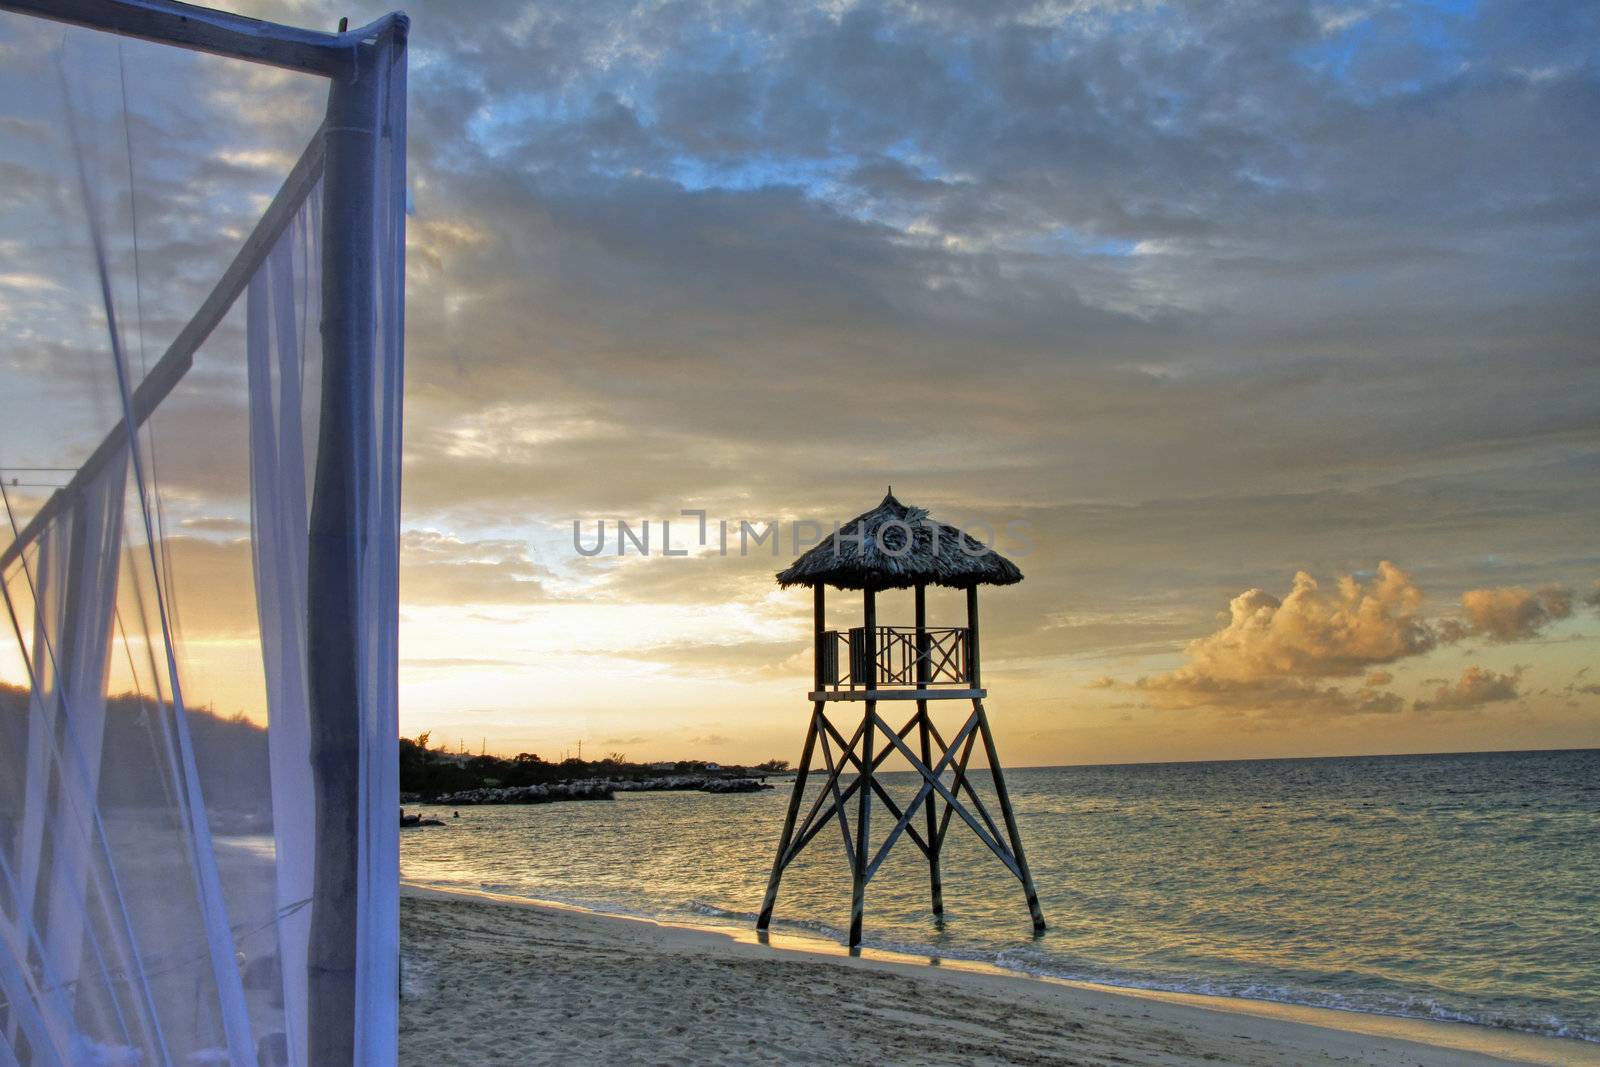 Tropical watchtower overlooking a beach wedding set up